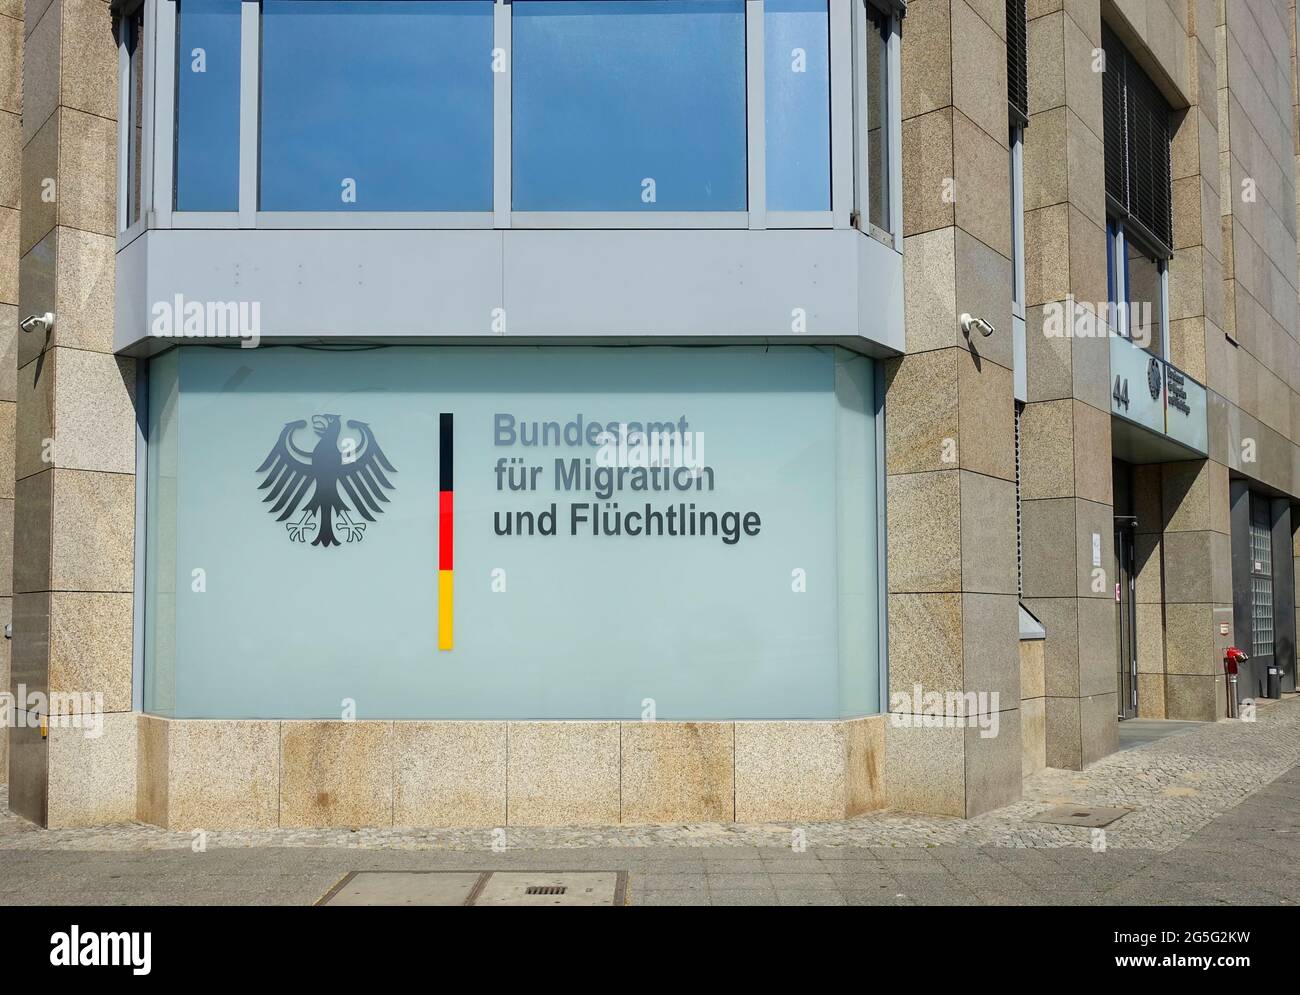 Federal Office for Migration and Refugees, Bundesamt für Migration und  Flüchtlinge, Bundesallee, Berlin, Germany Stock Photo - Alamy